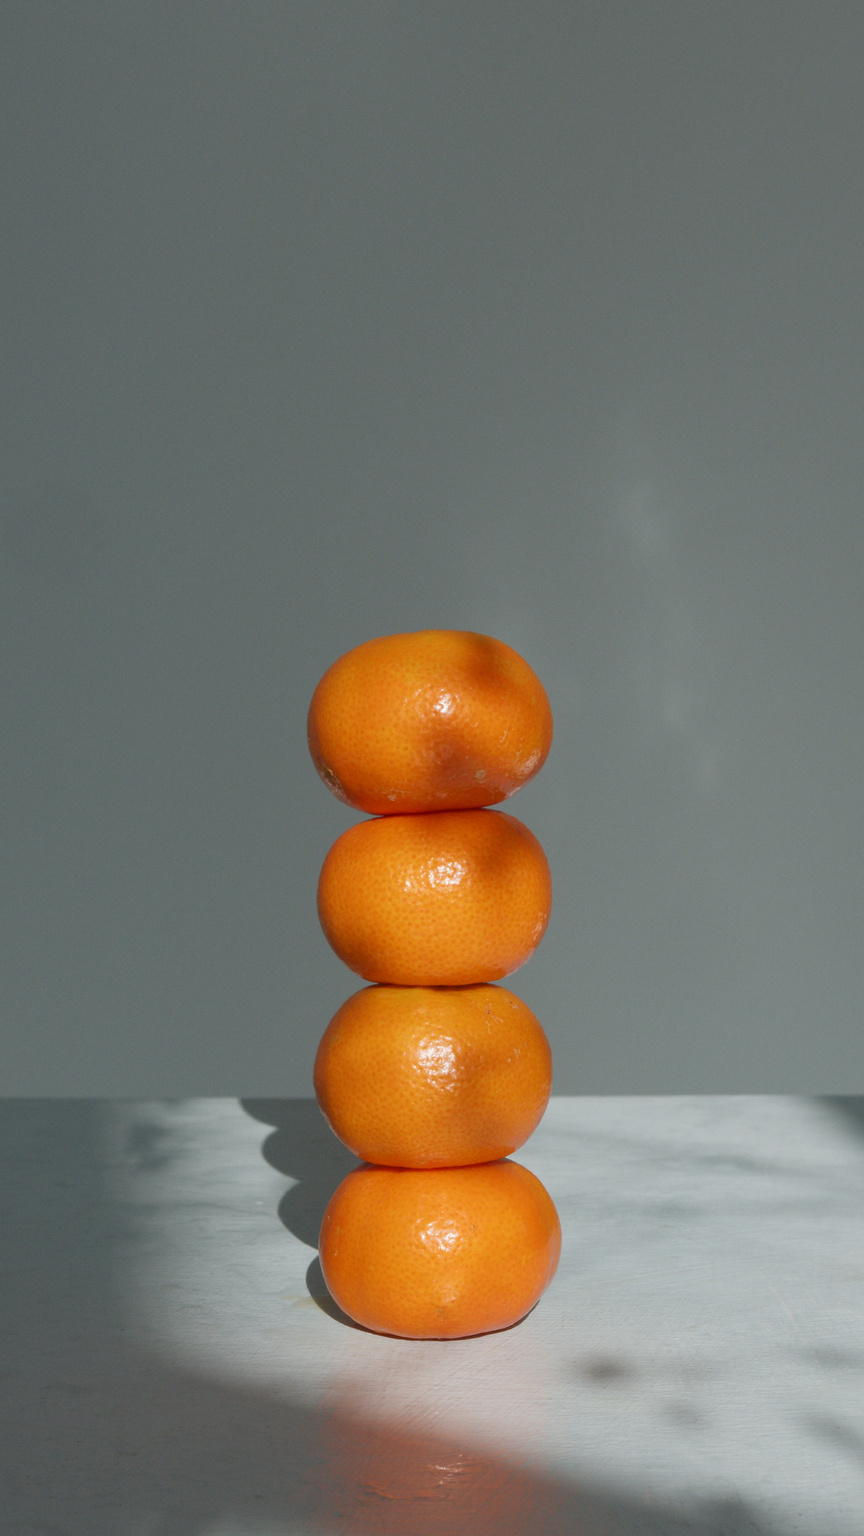 Balanced Oranges Fruit on White Table